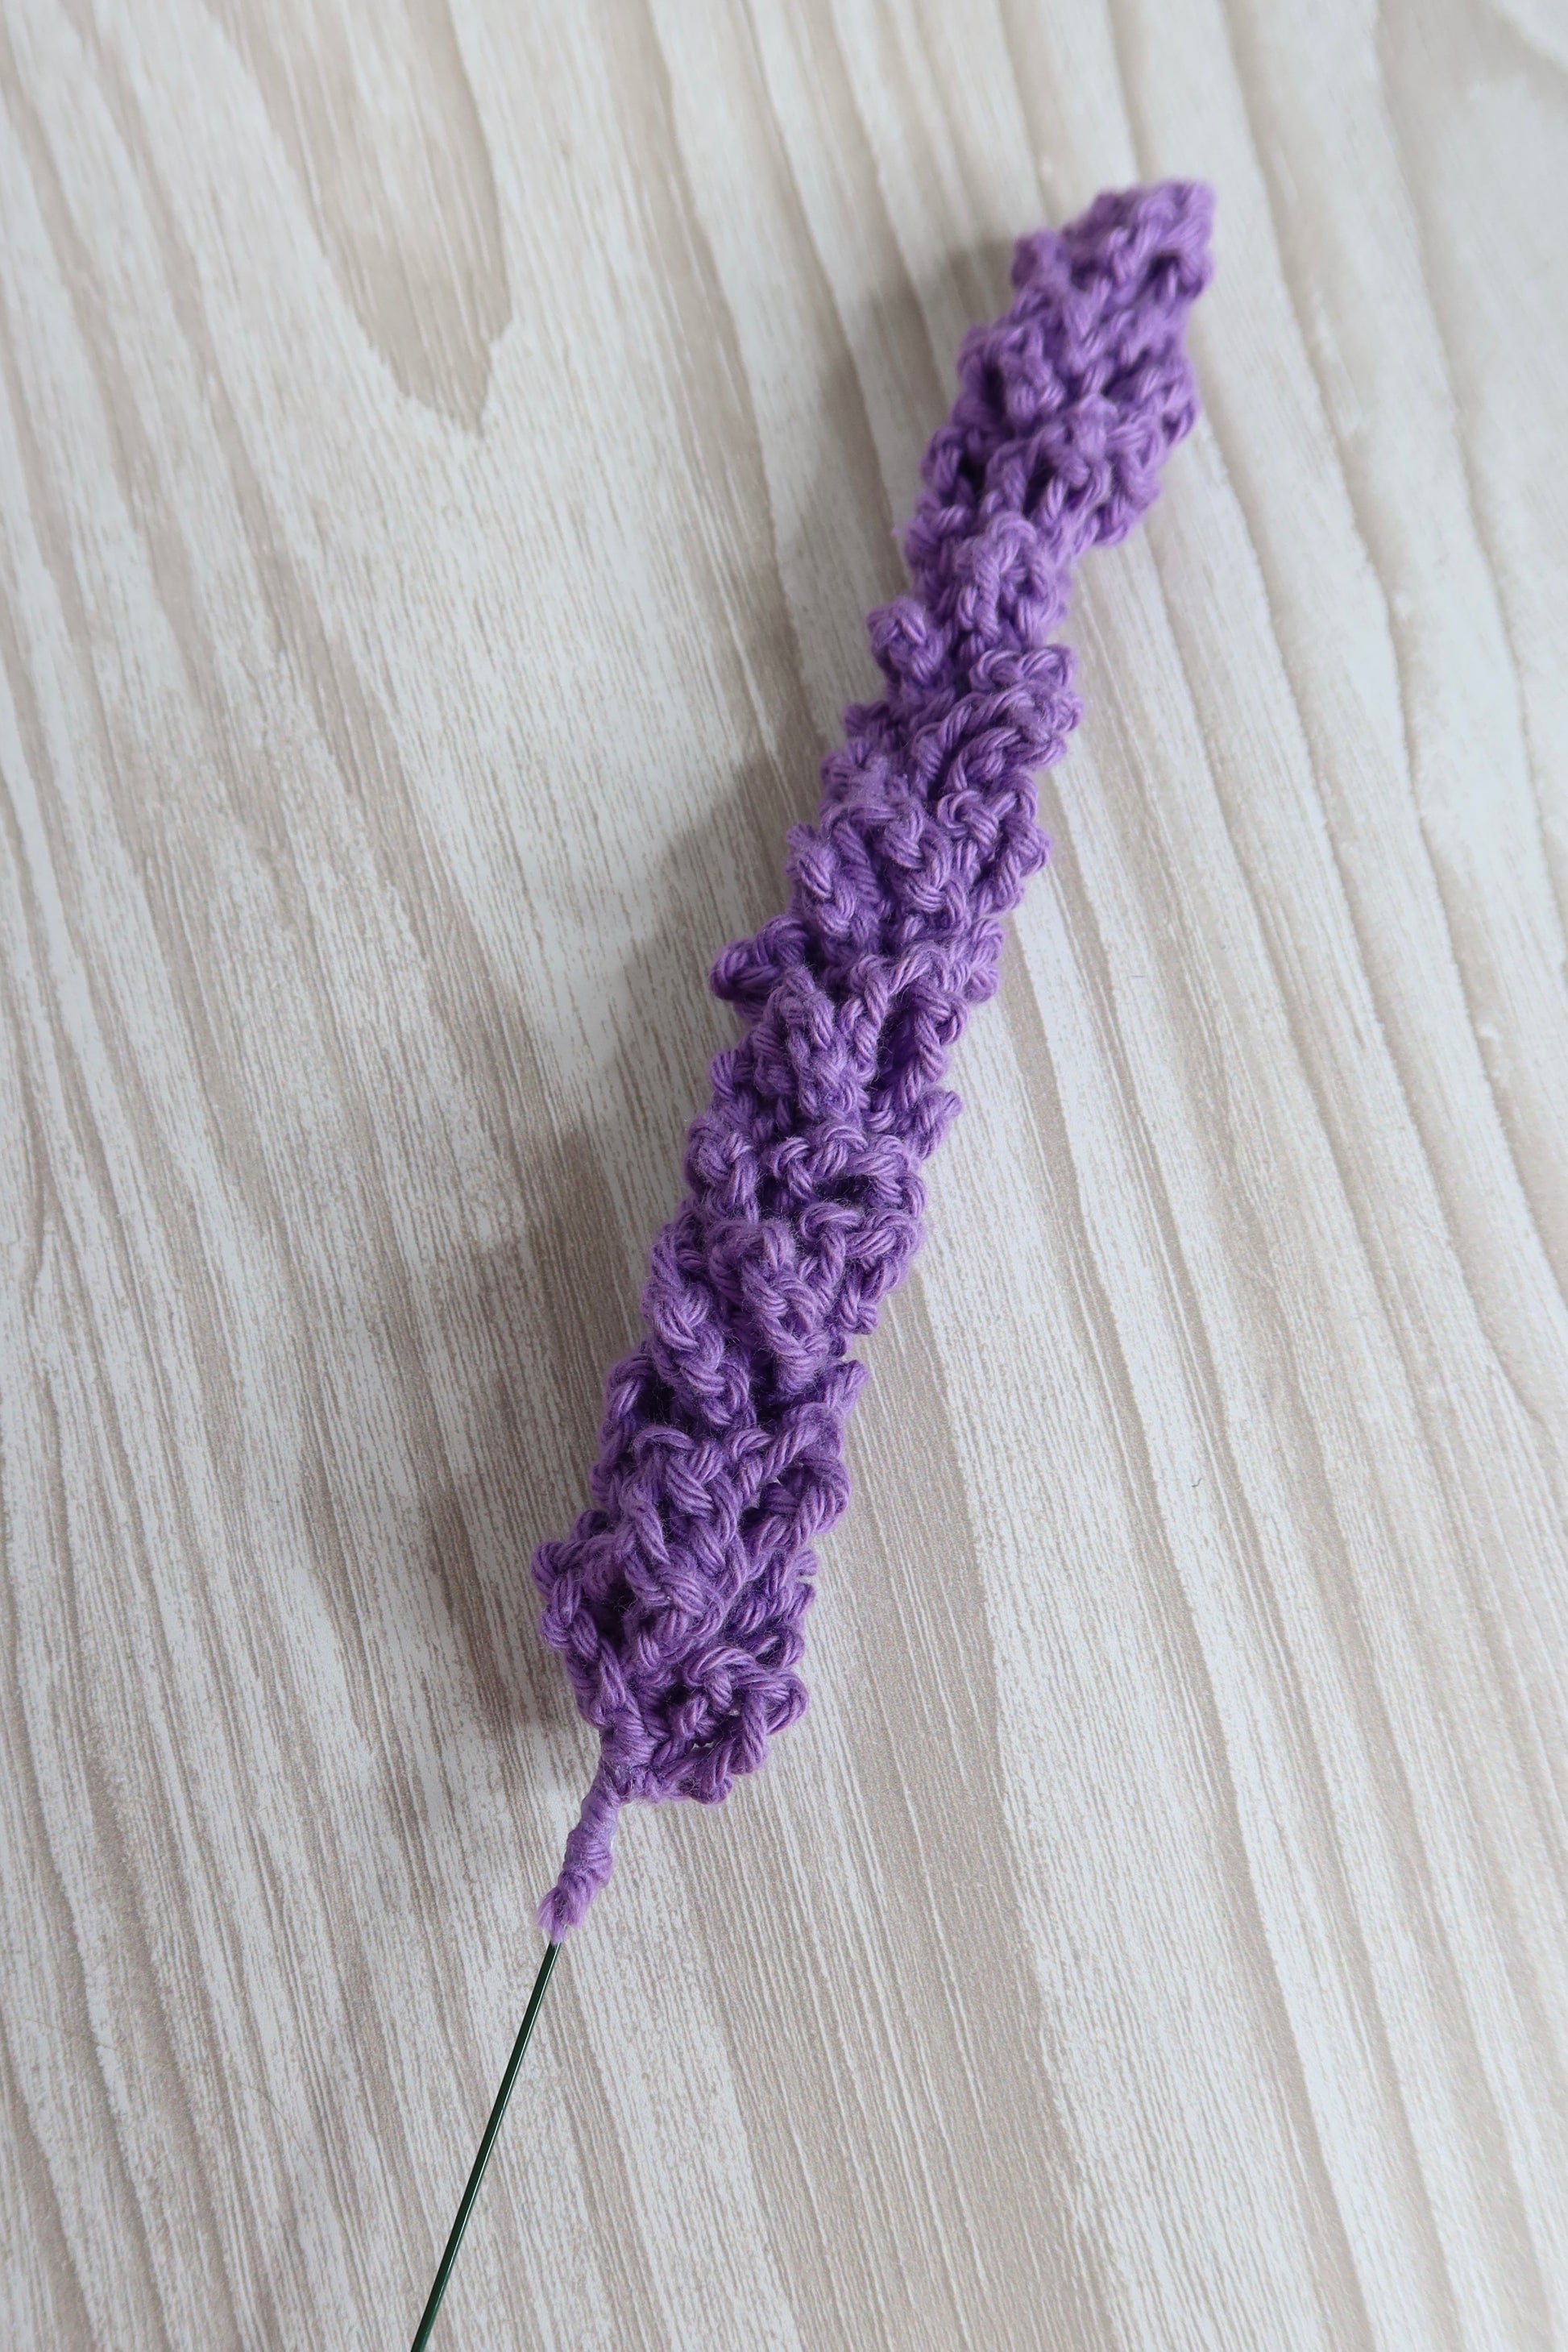 A single crochet lavender stem in Deep Purple